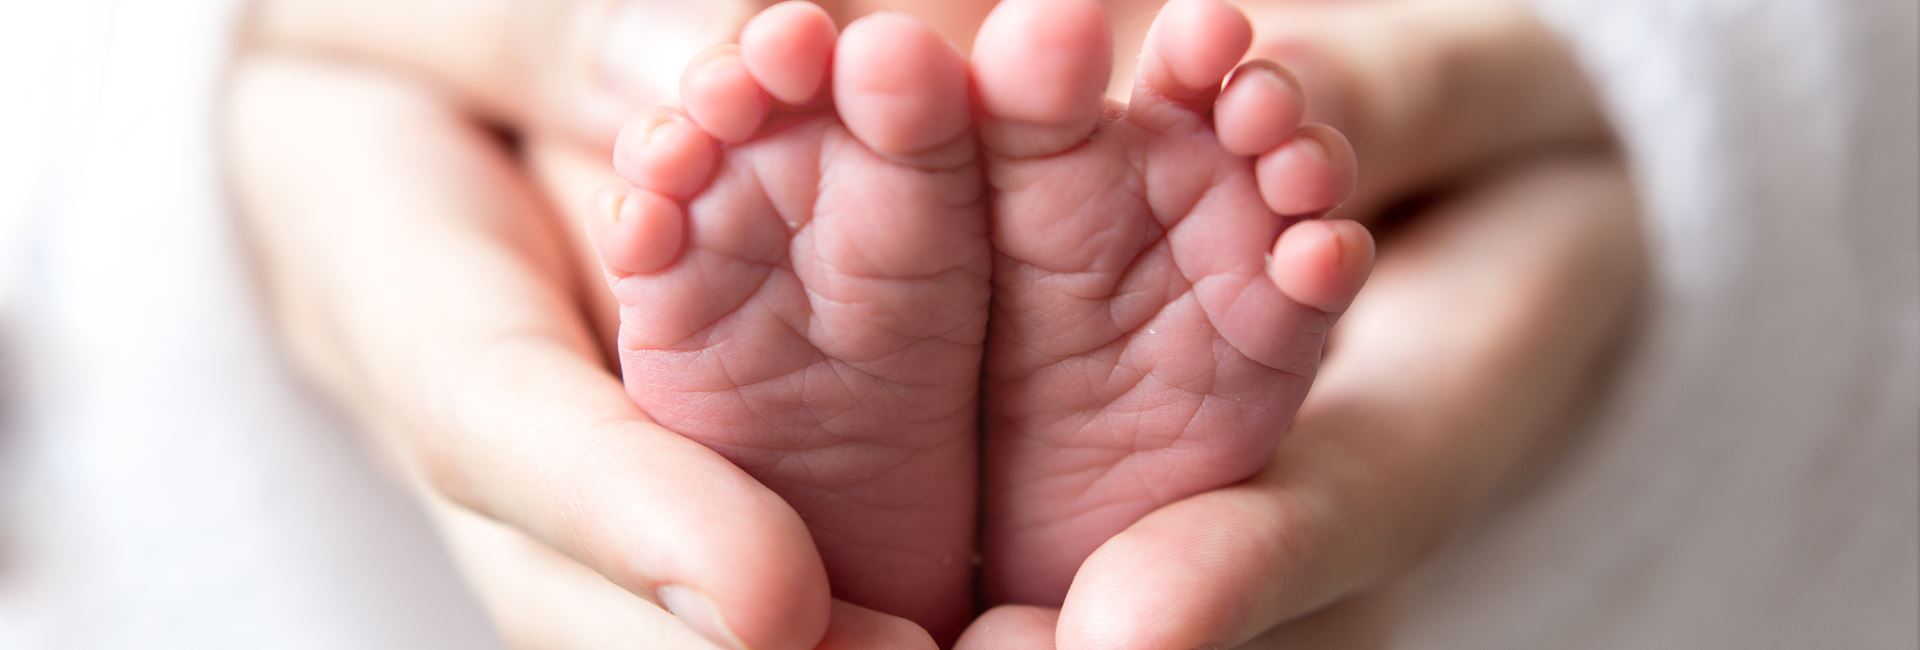 Hænder der holder om babyfødder